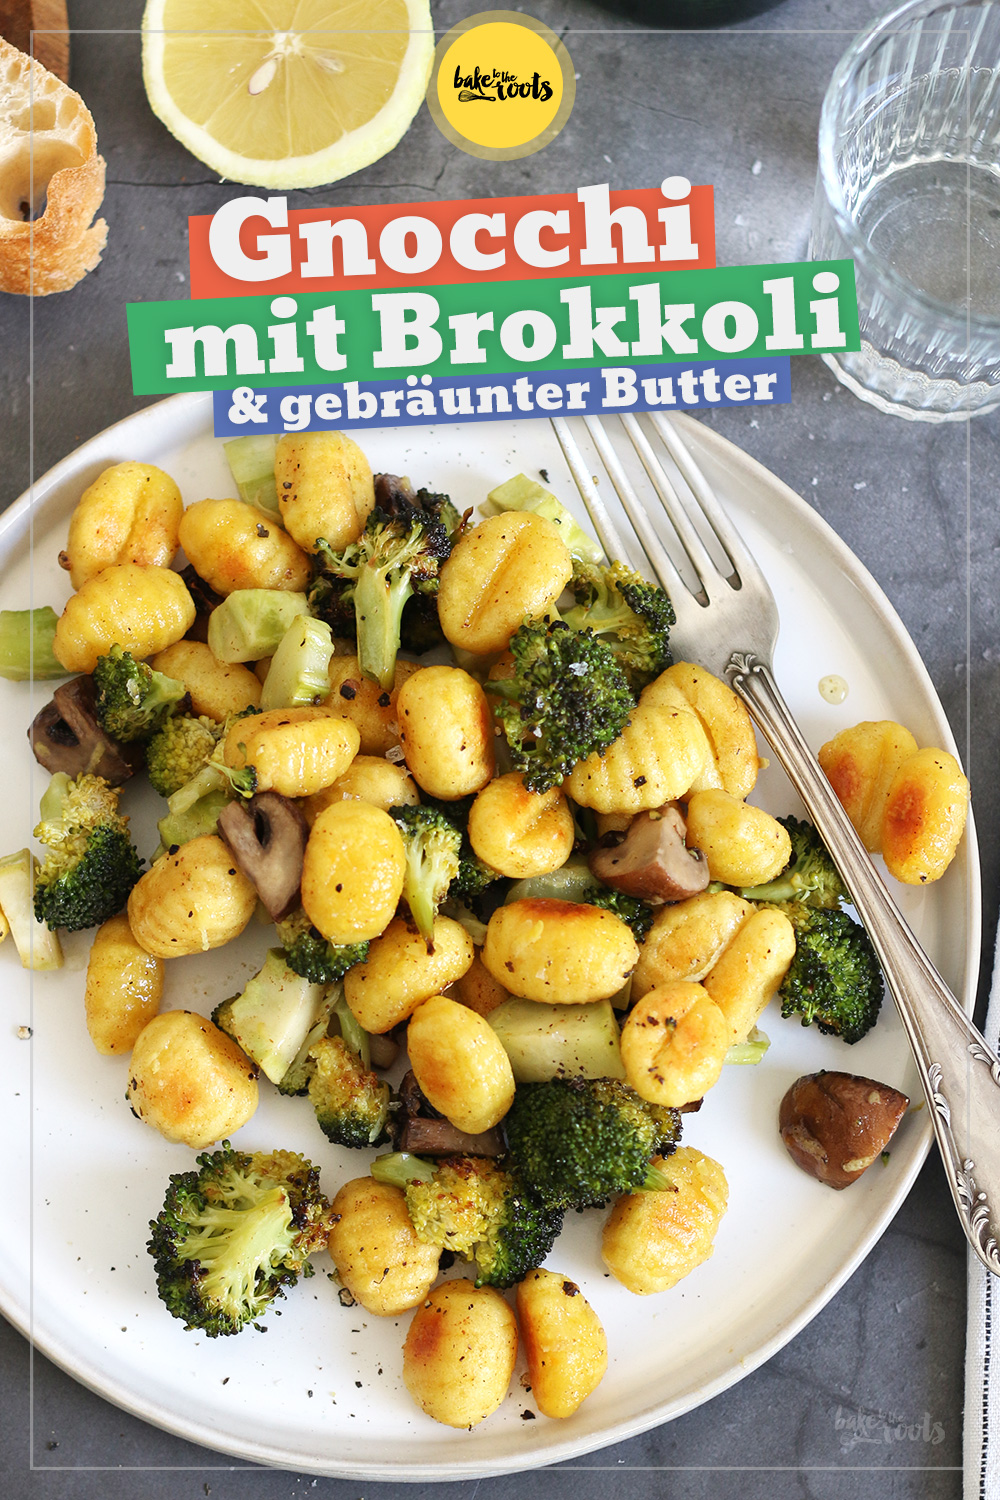 Gnocchi mit gebräunter Butter & Brokkoli | Bake to the roots